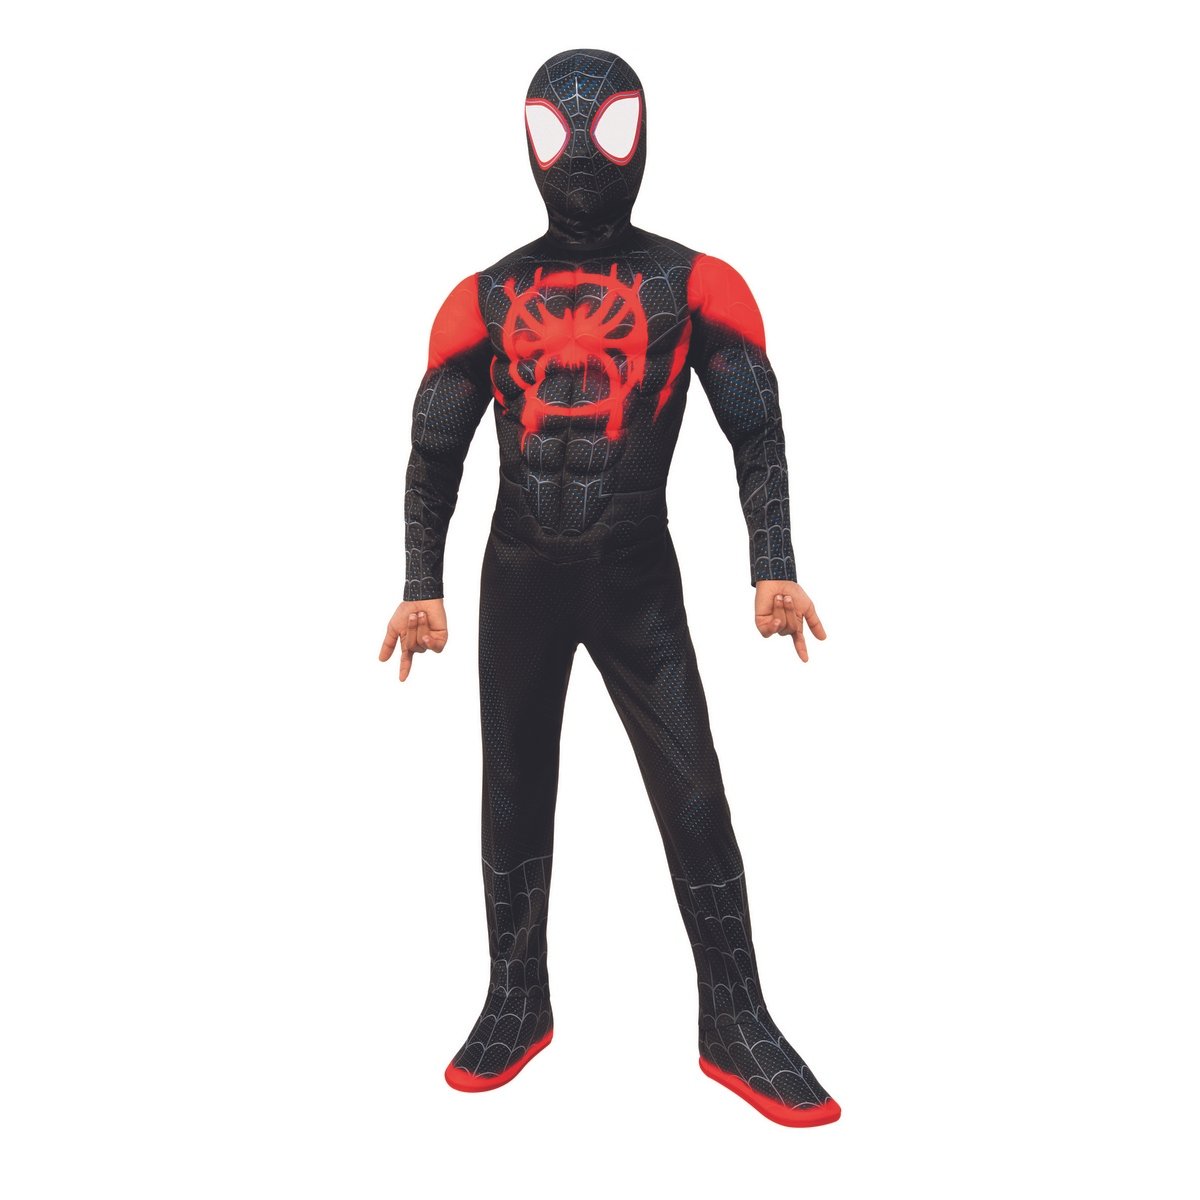 Spider man en costume noir et rouge se balance a cout de lance